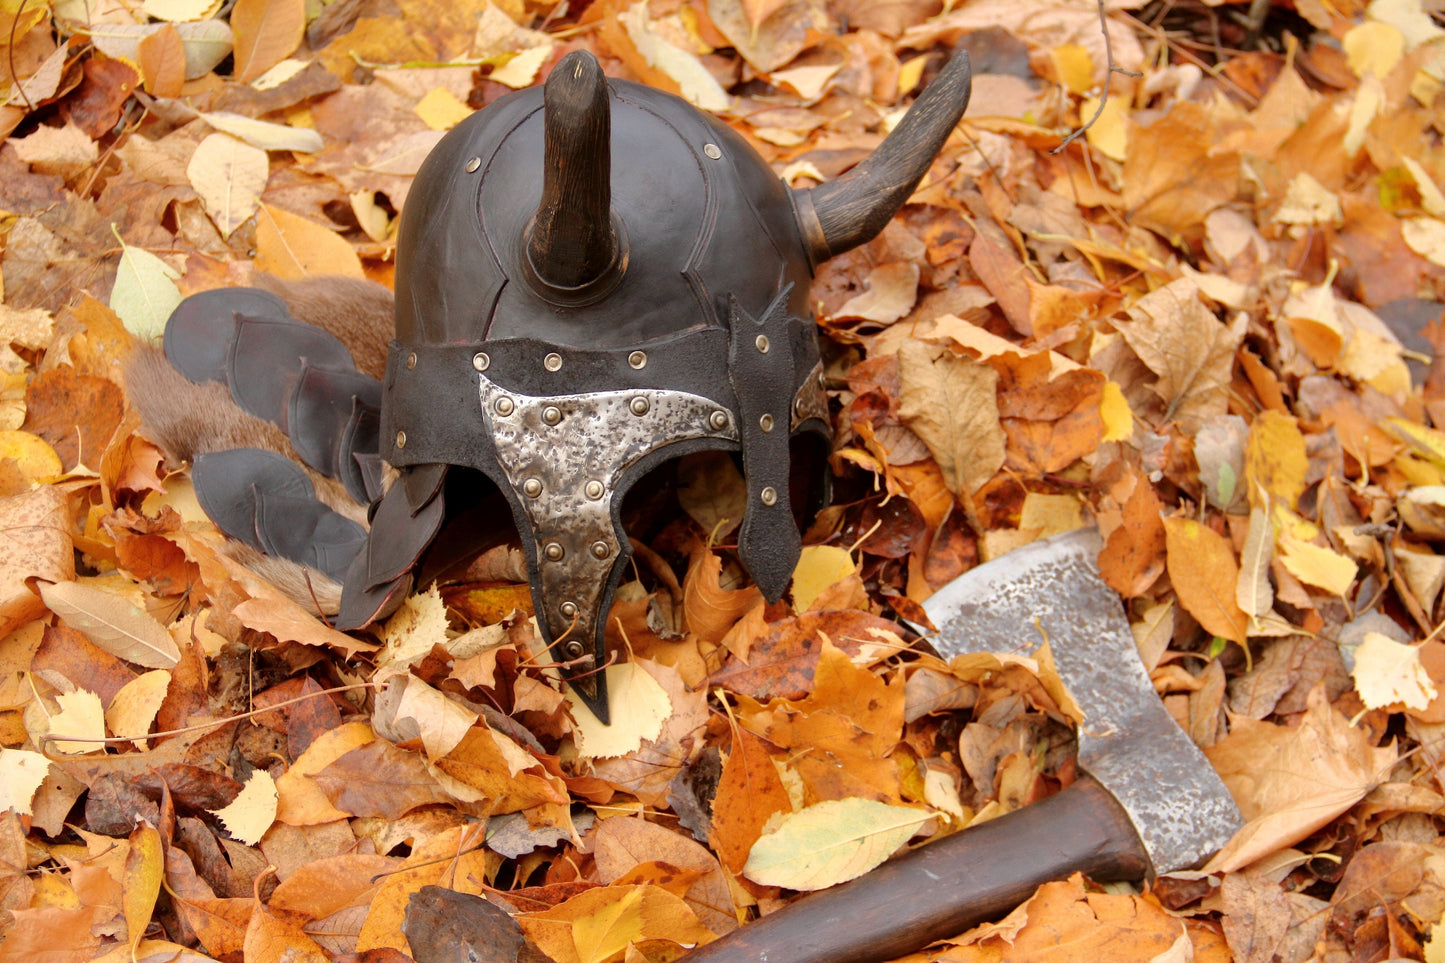 Viking battle helmet with horns